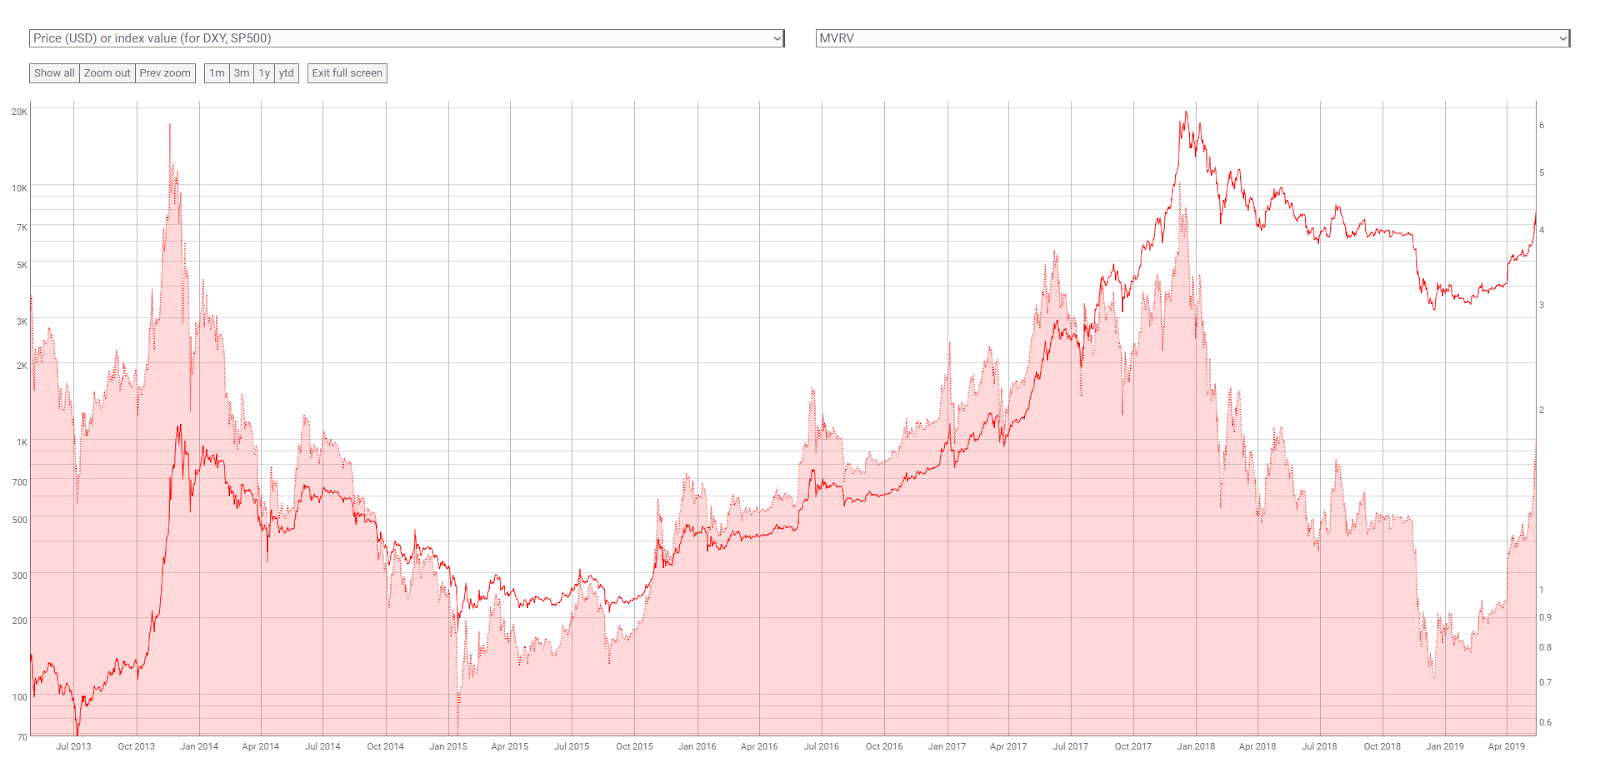 MVRV comparado ao preço do Bitcoin. Fonte: Coinmetrics